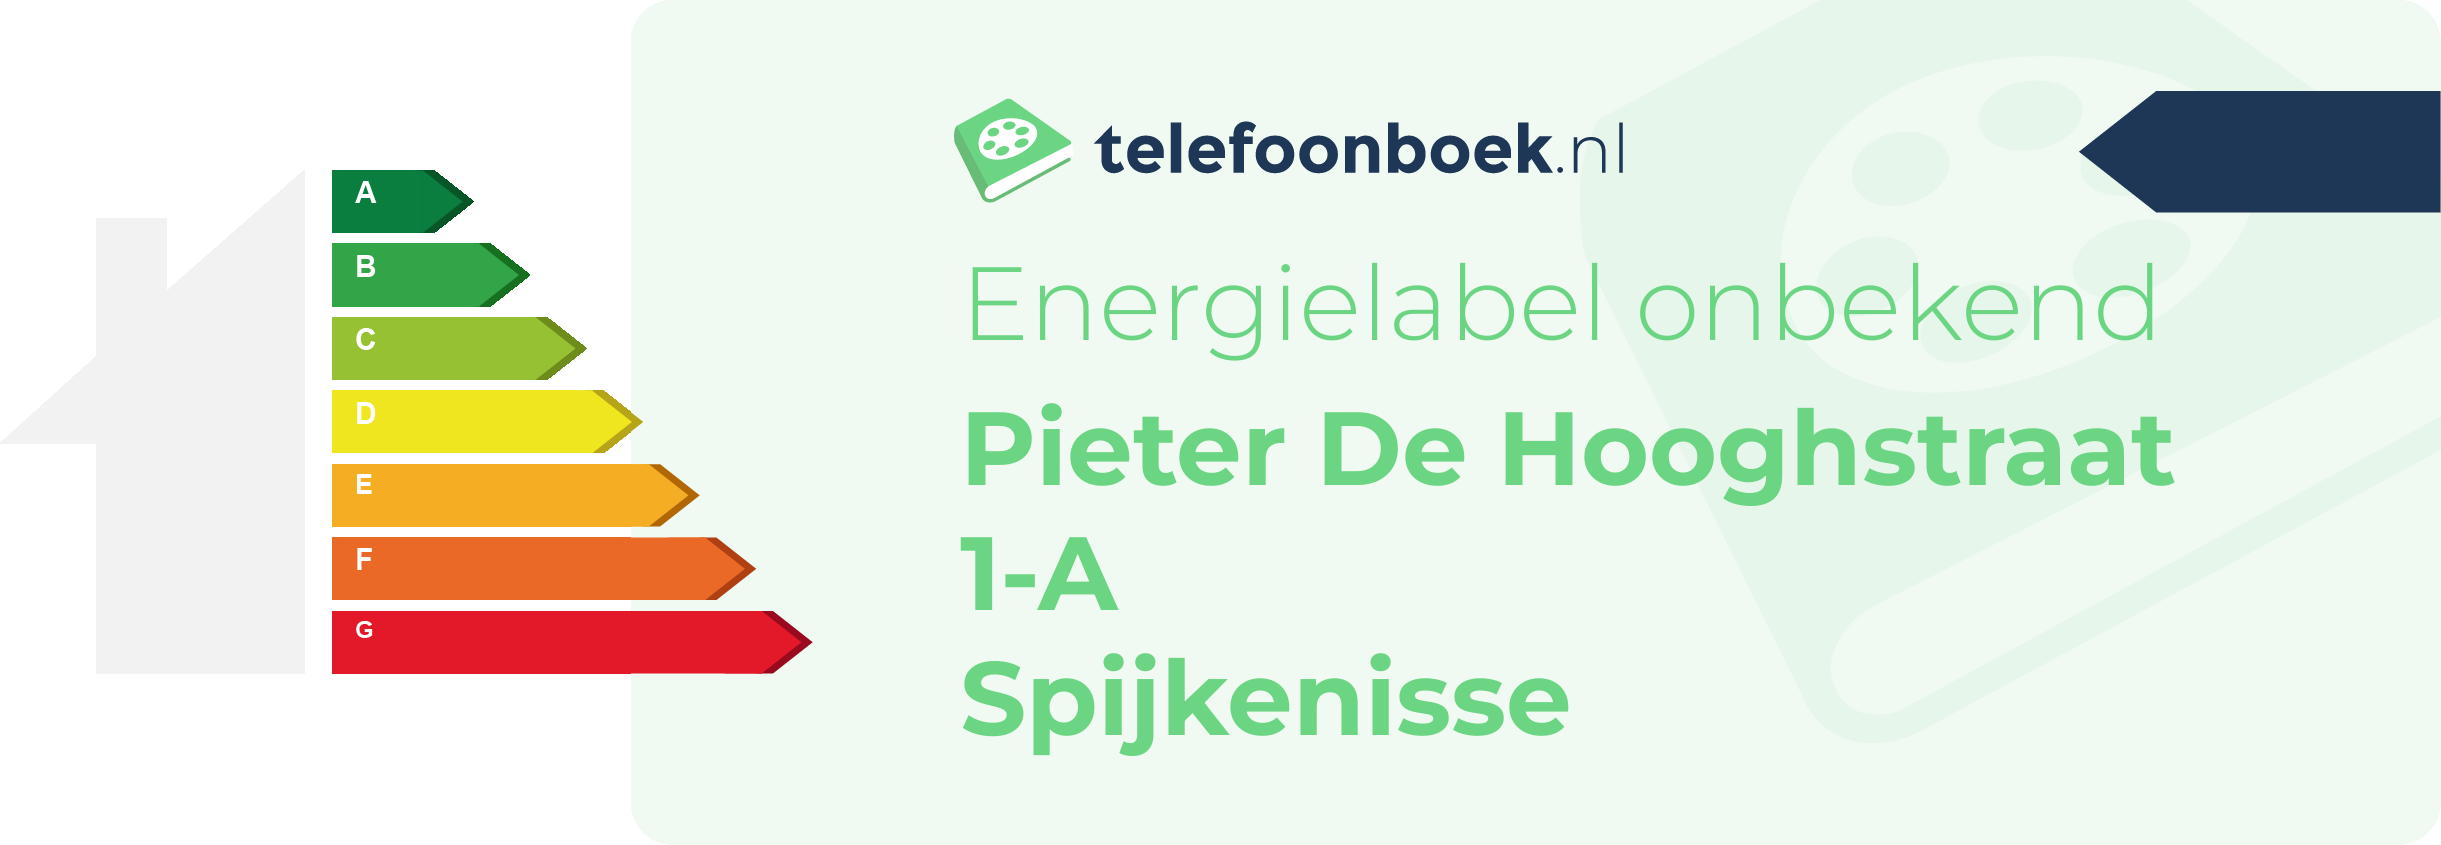 Energielabel Pieter De Hooghstraat 1-A Spijkenisse